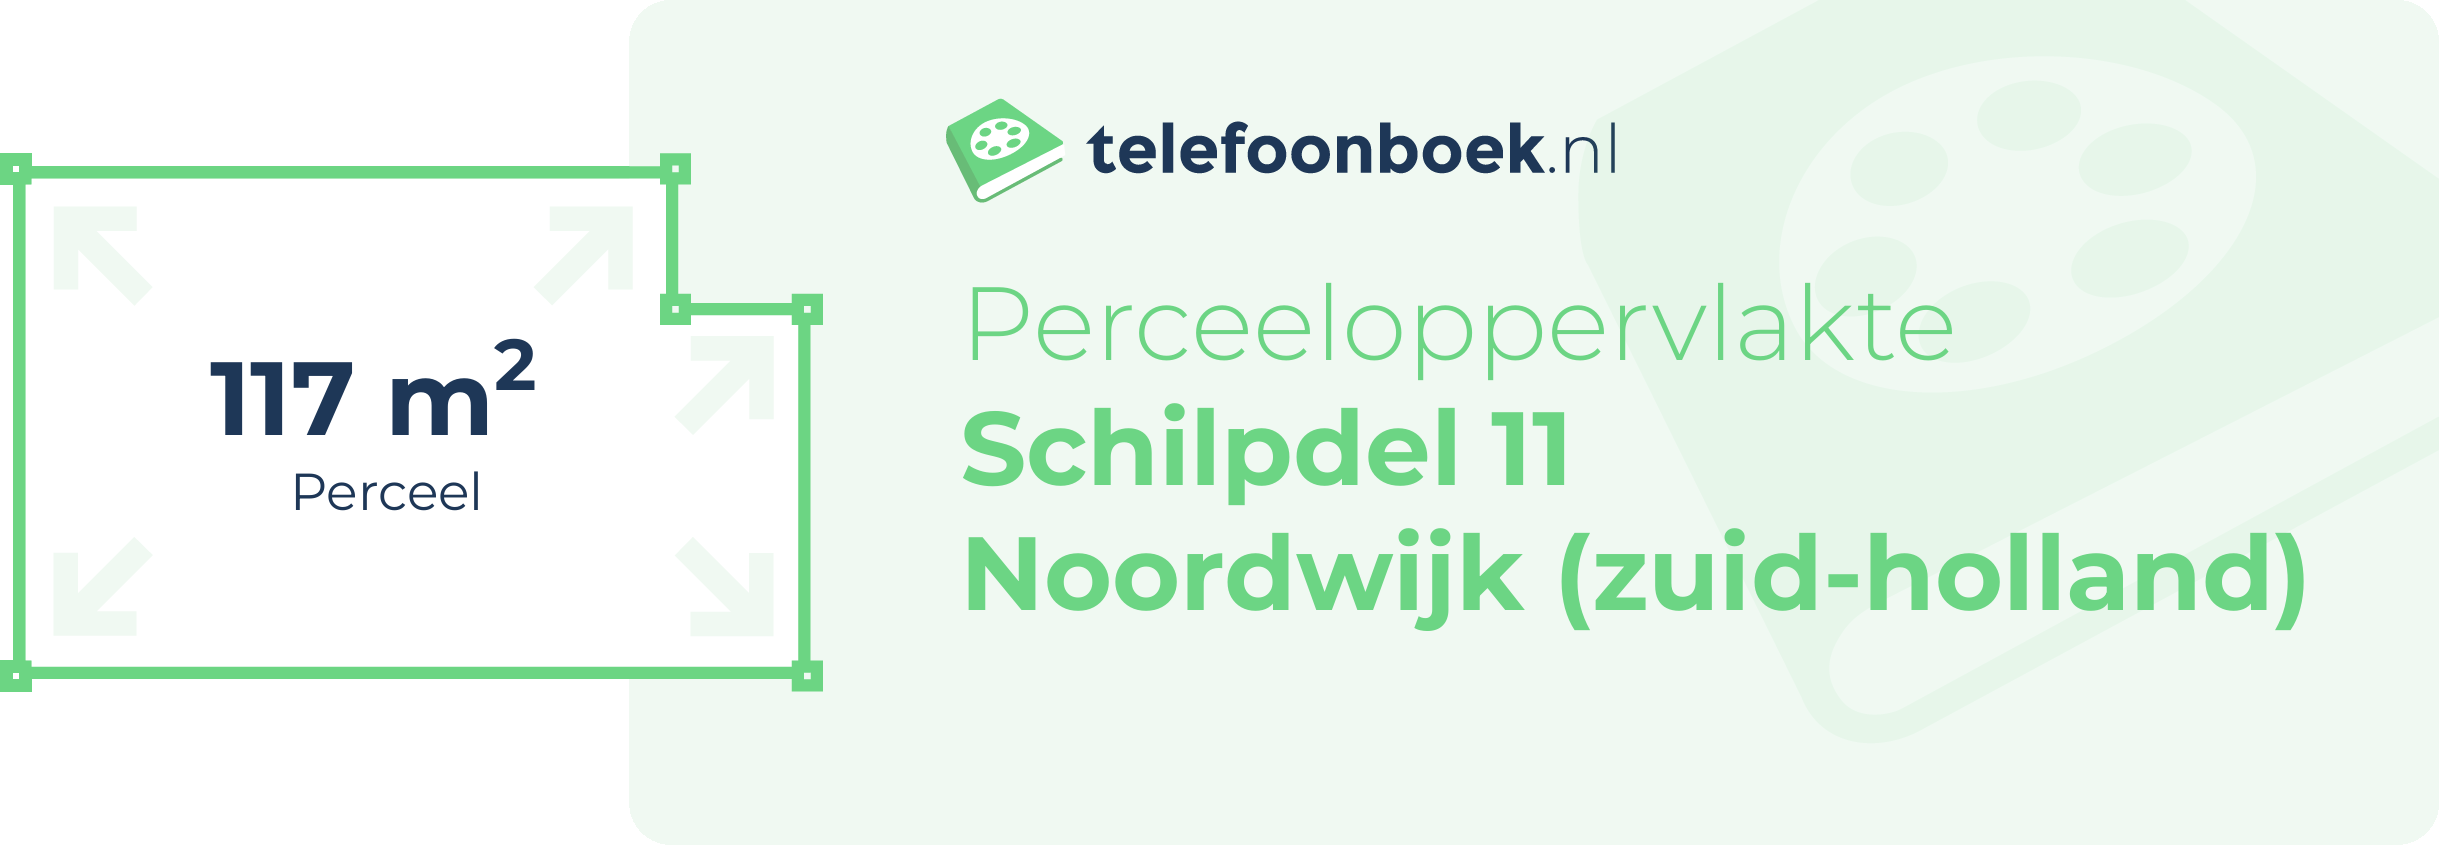 Perceeloppervlakte Schilpdel 11 Noordwijk (Zuid-Holland)